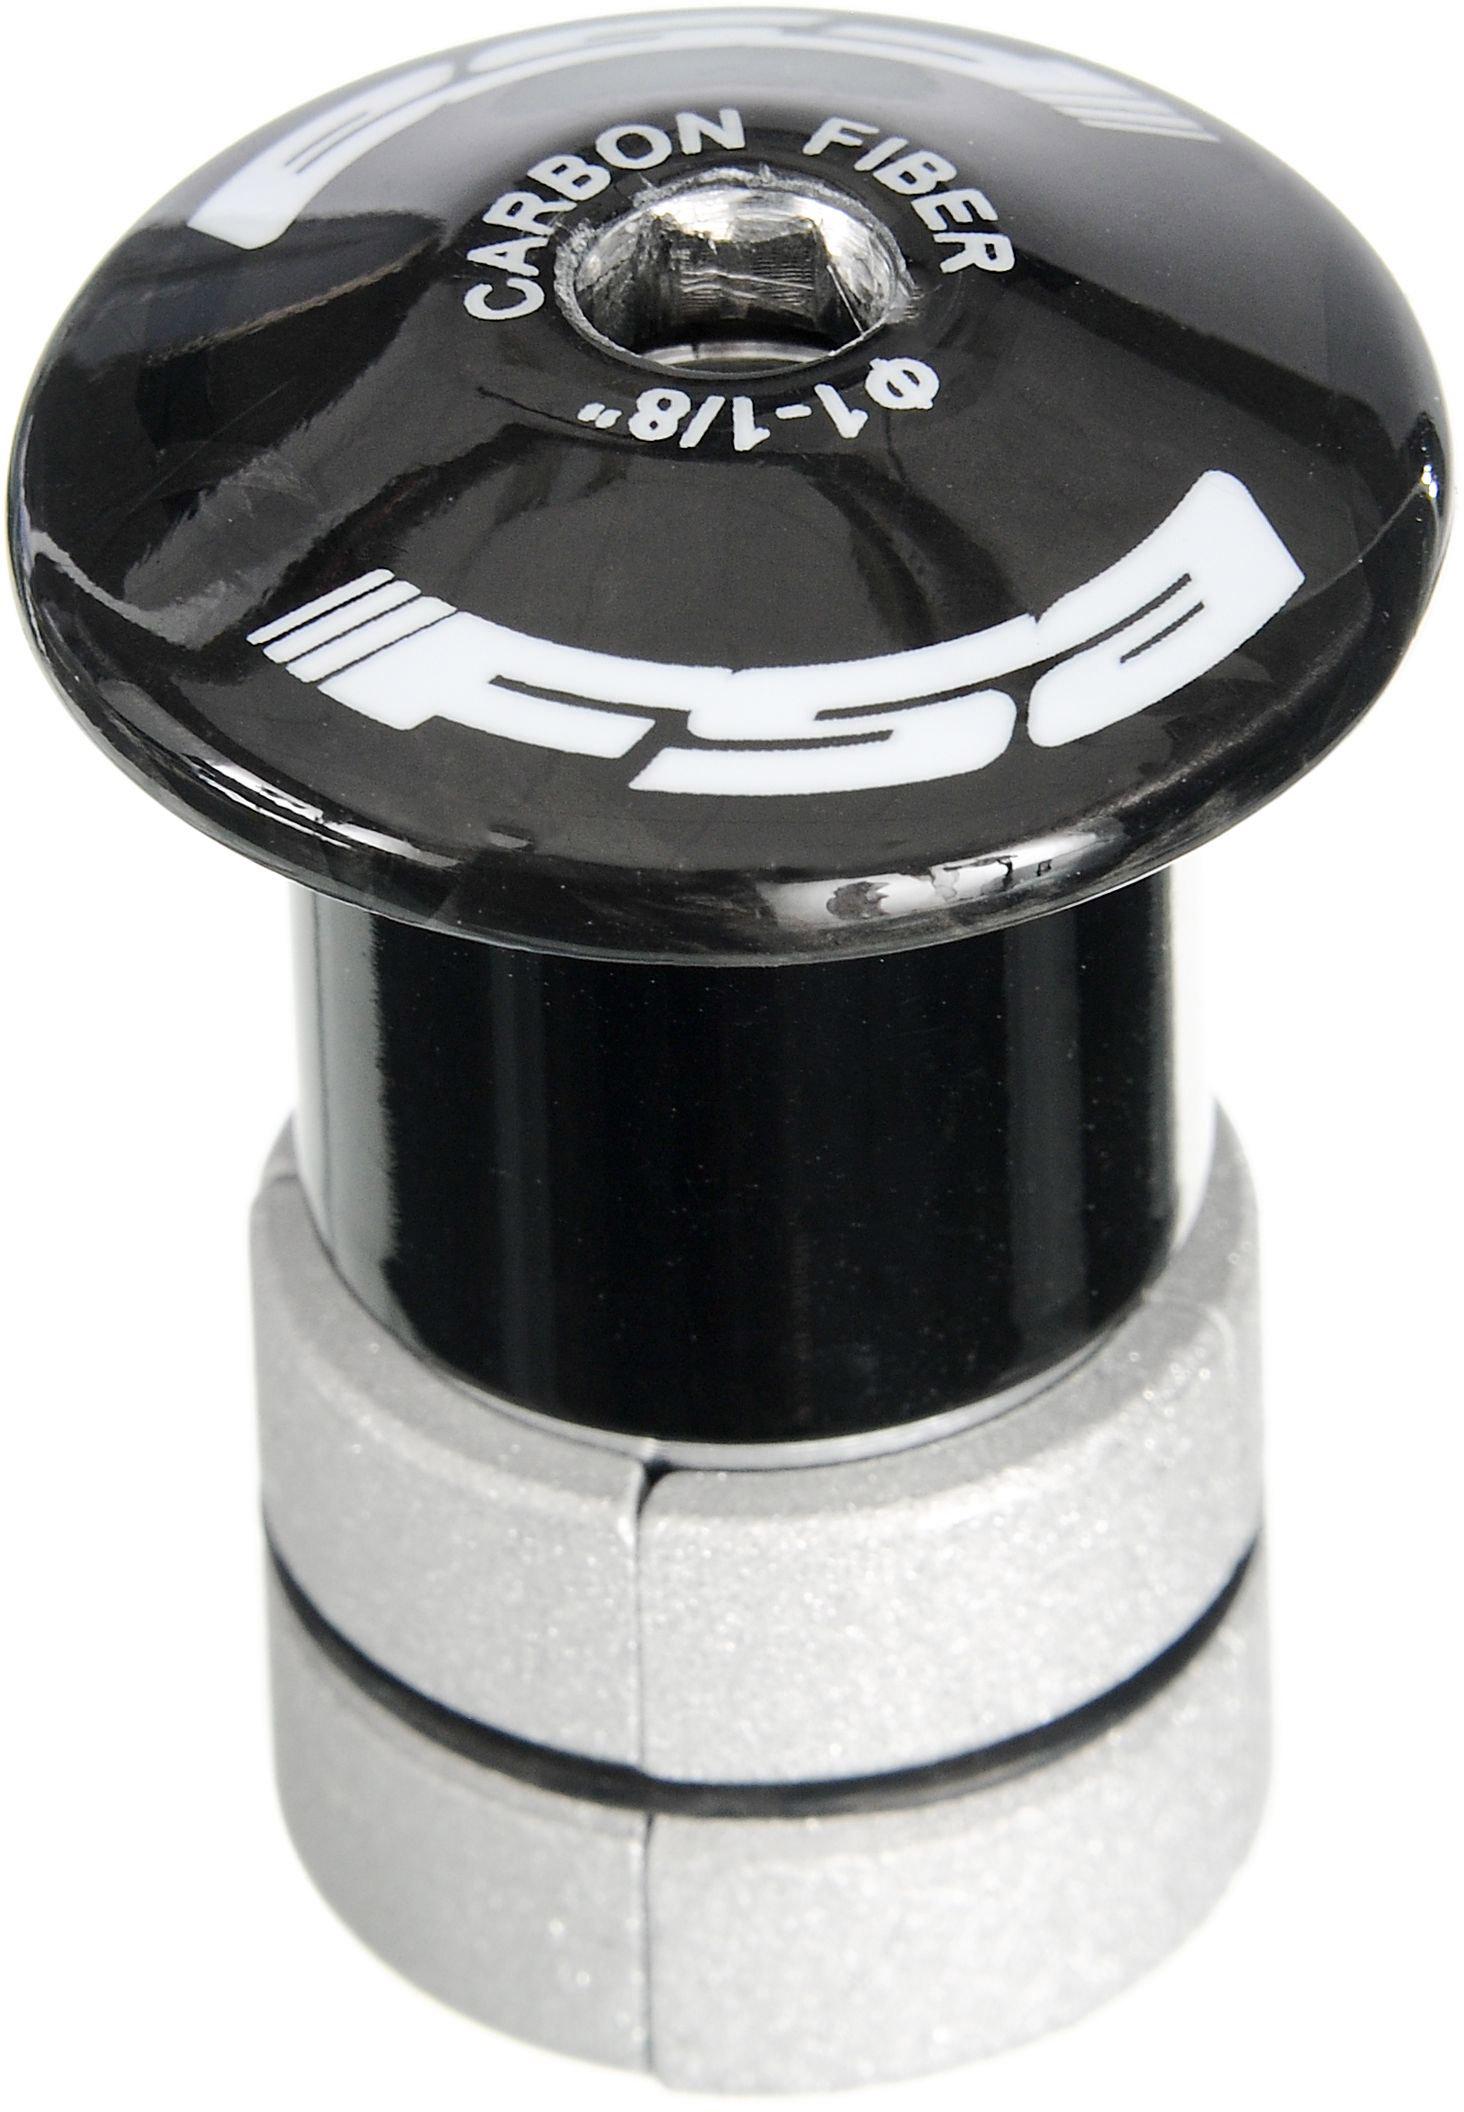 Fsa Compressor Pro 1 1/8 Top Cap (th884) - Black